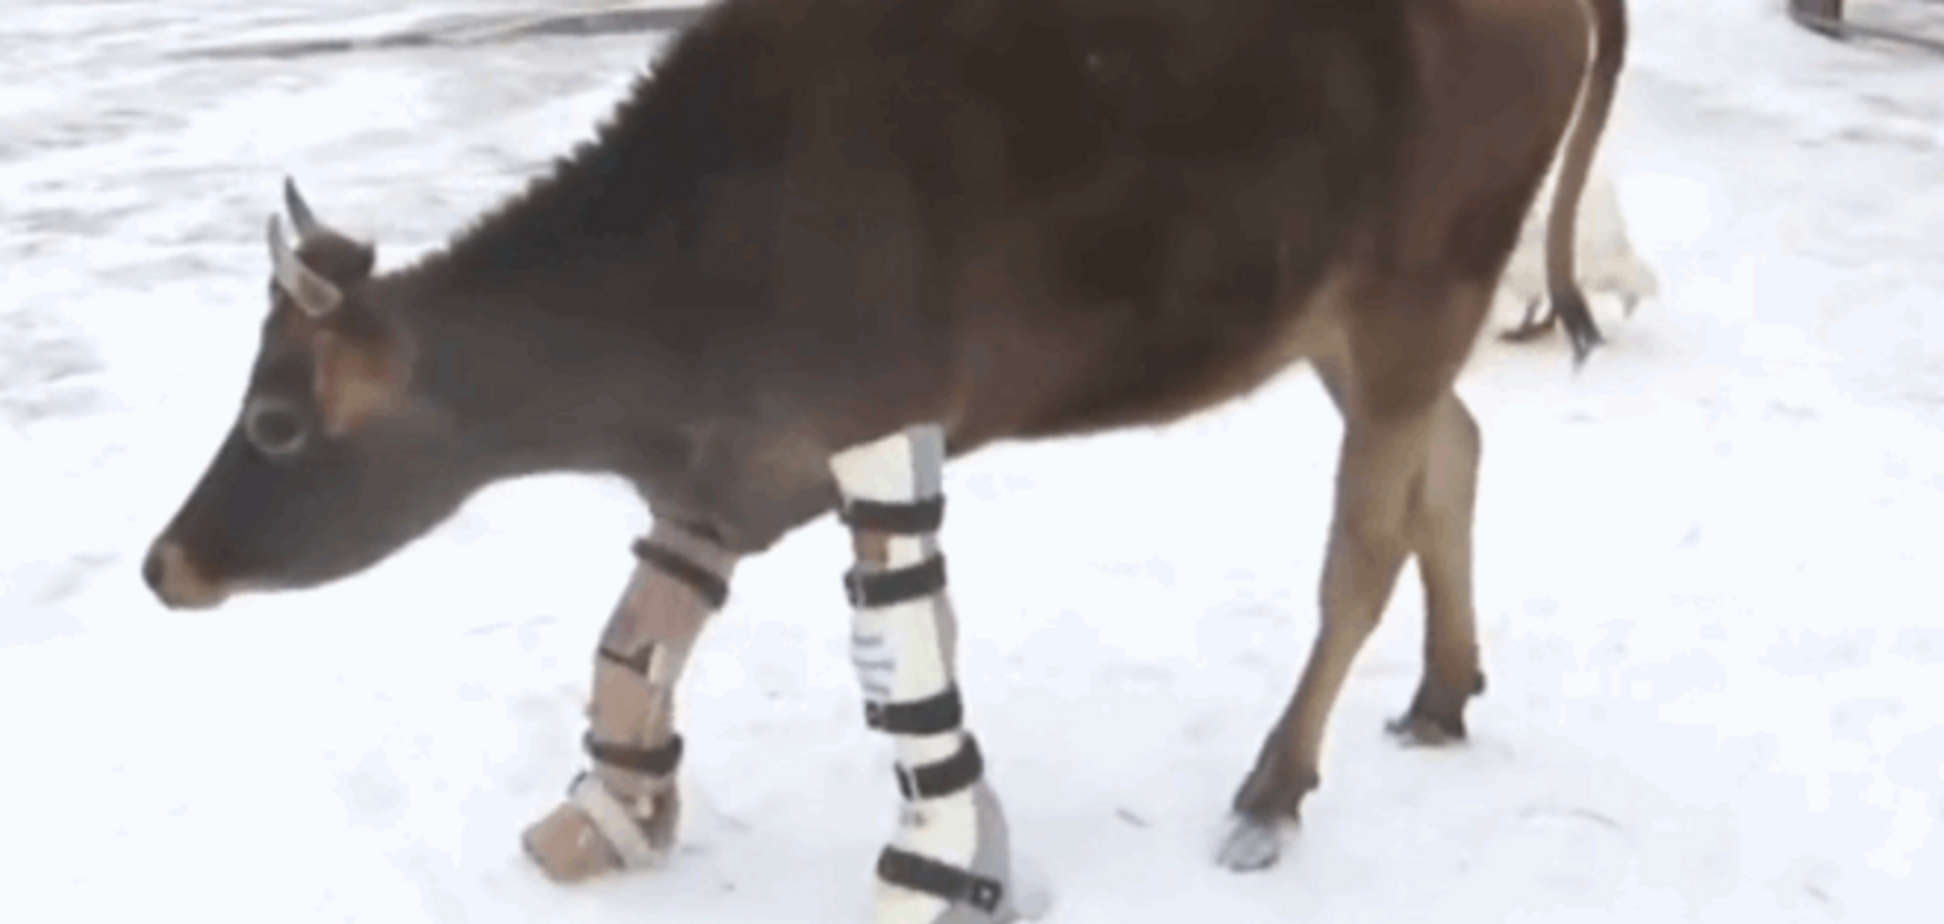 Это вам не плачущая корова в тапочках: быку-инвалиду сделали протезы ног - видеофакт